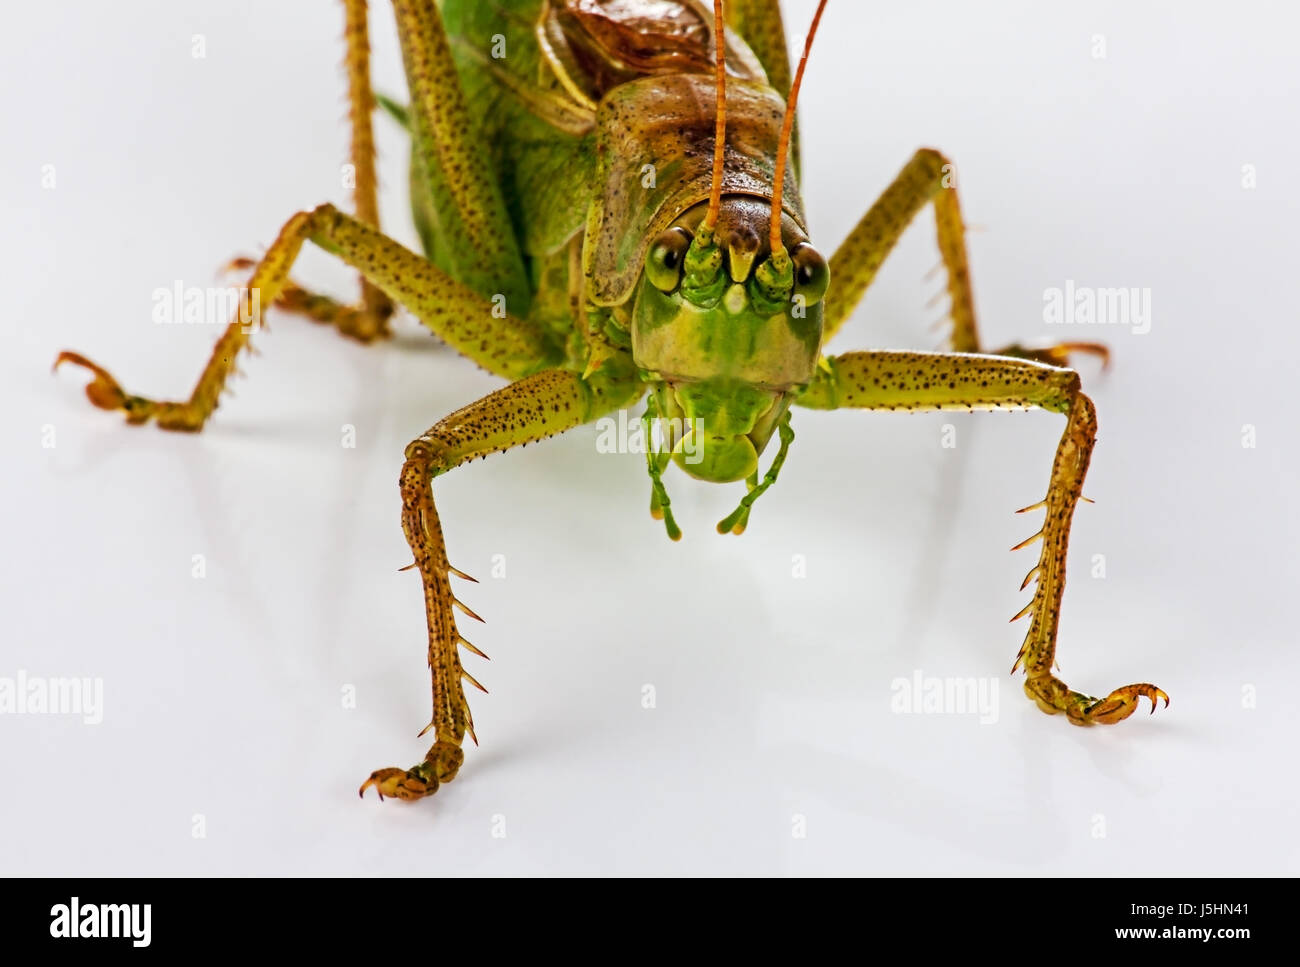 The green grasshopperon on white Stock Photo